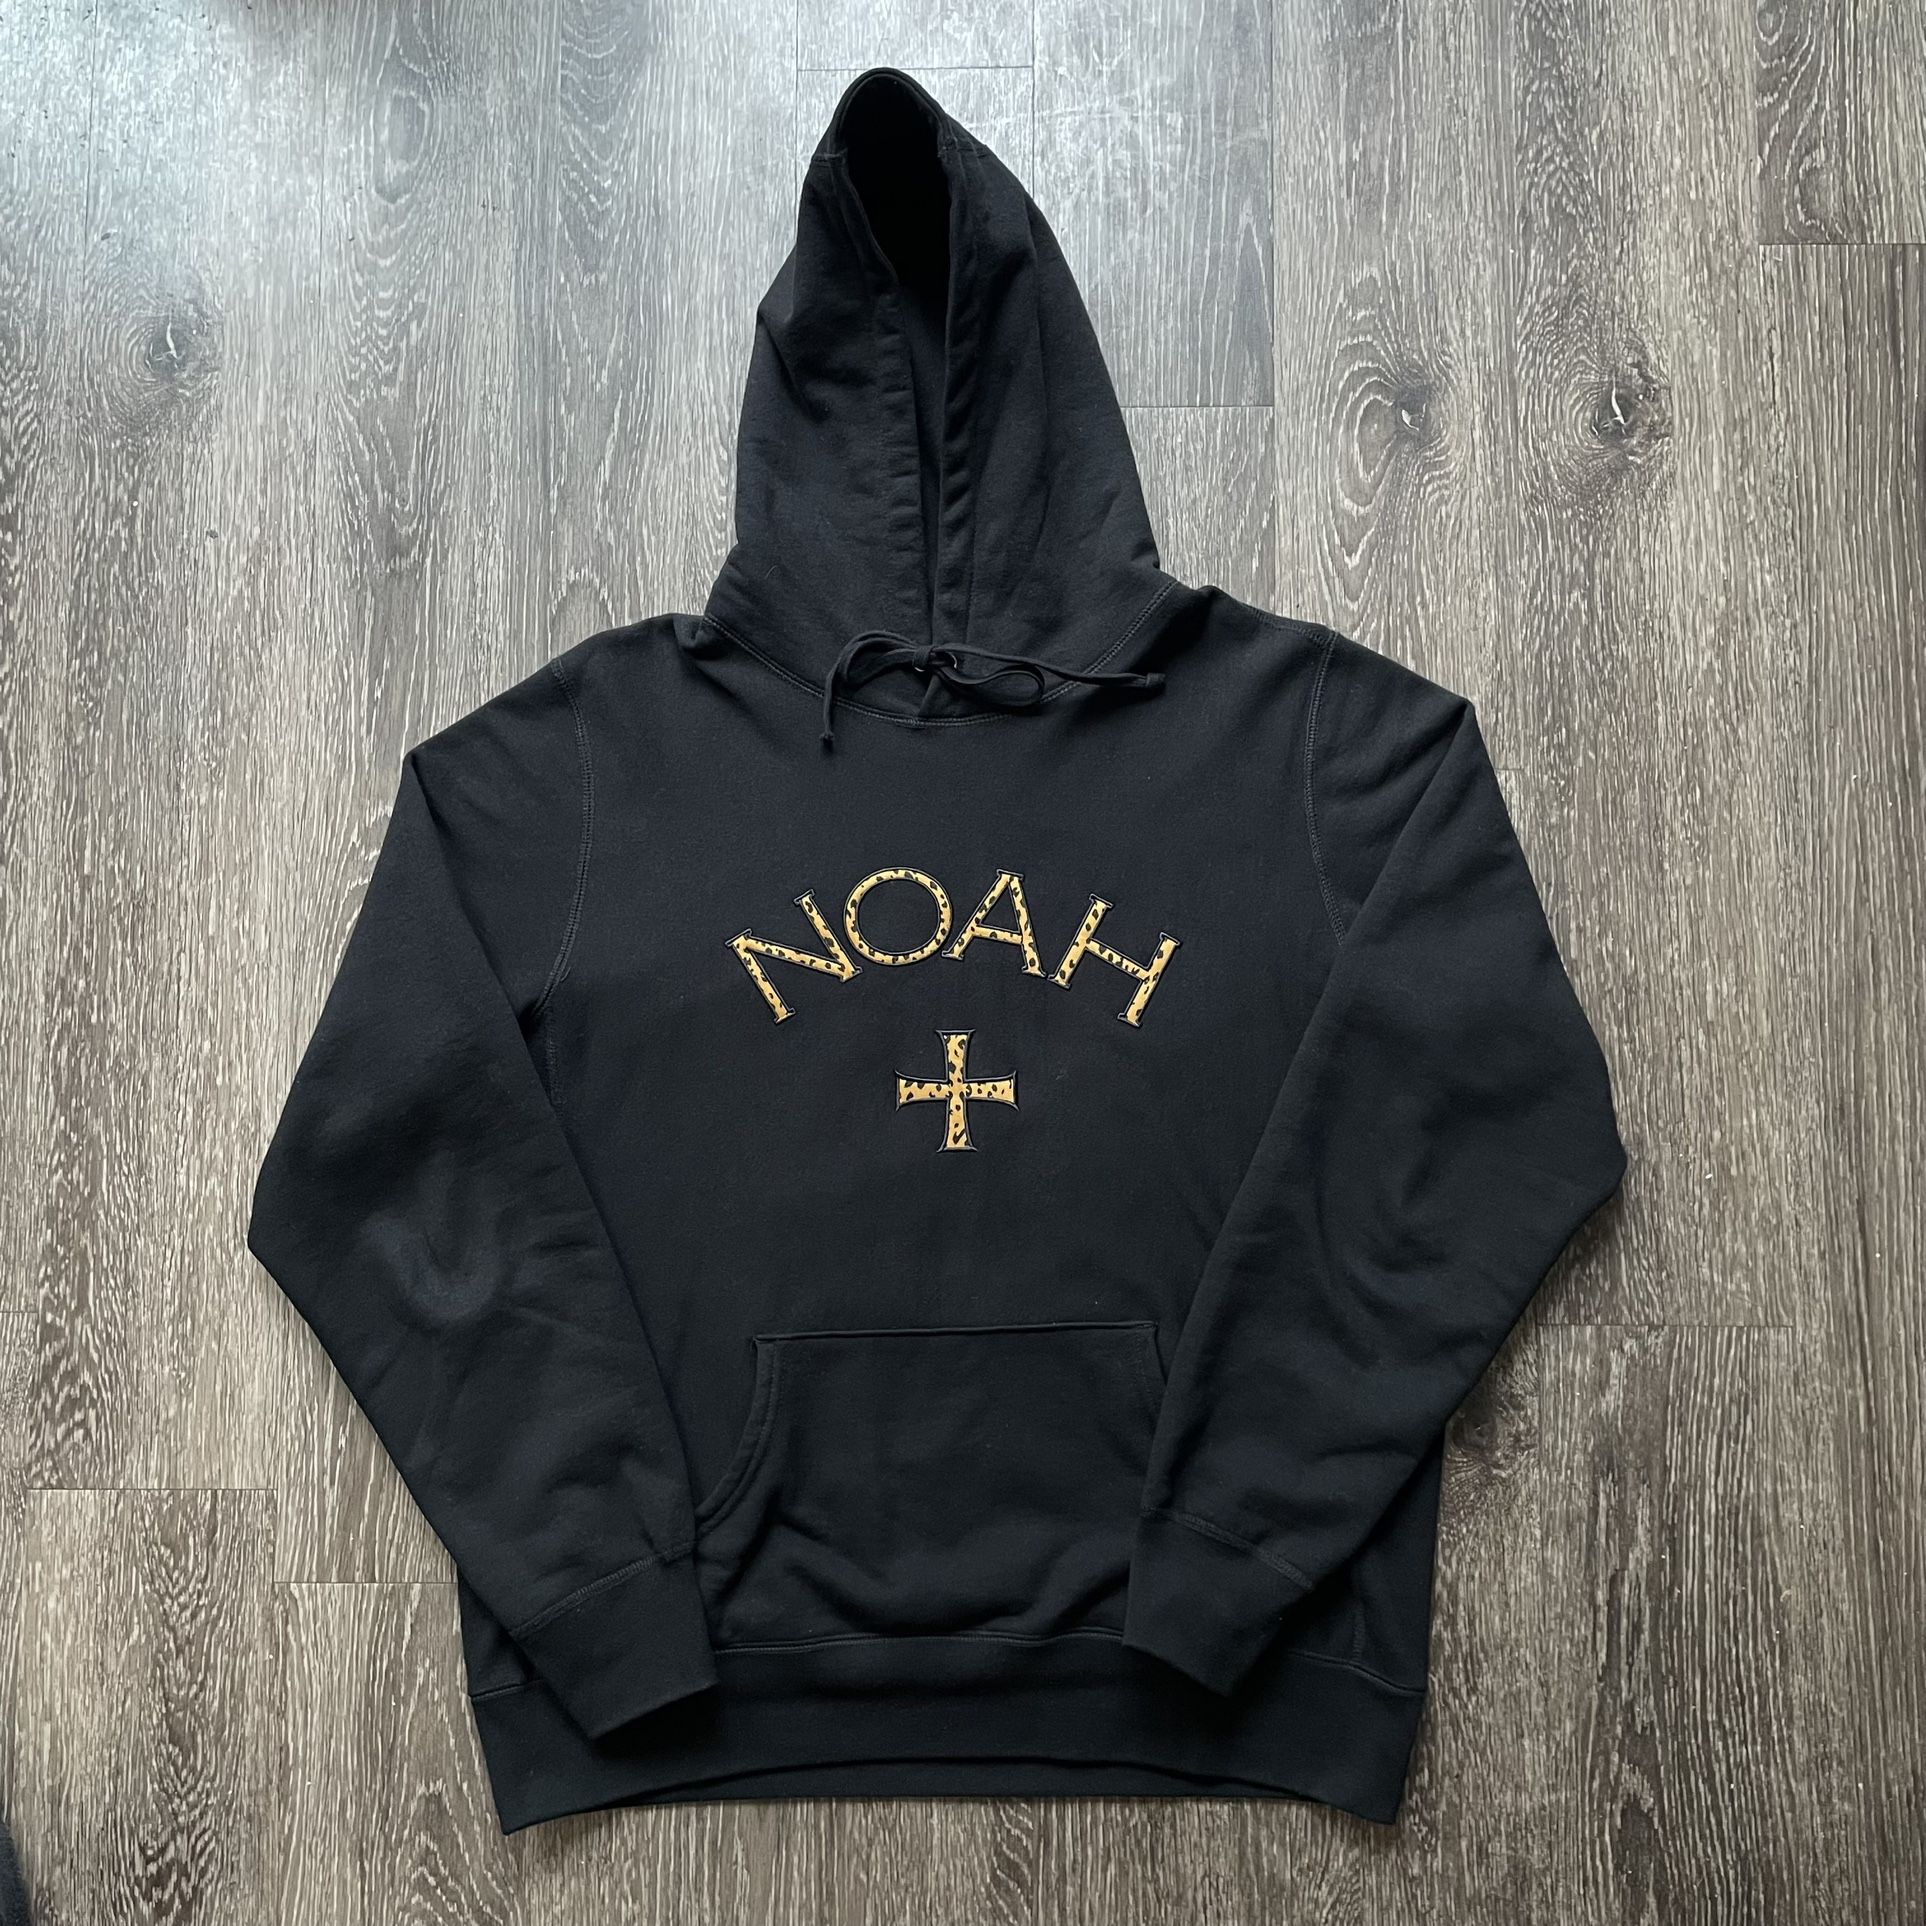 Noah Cheetah Hoodie Sweatshirt XL Black